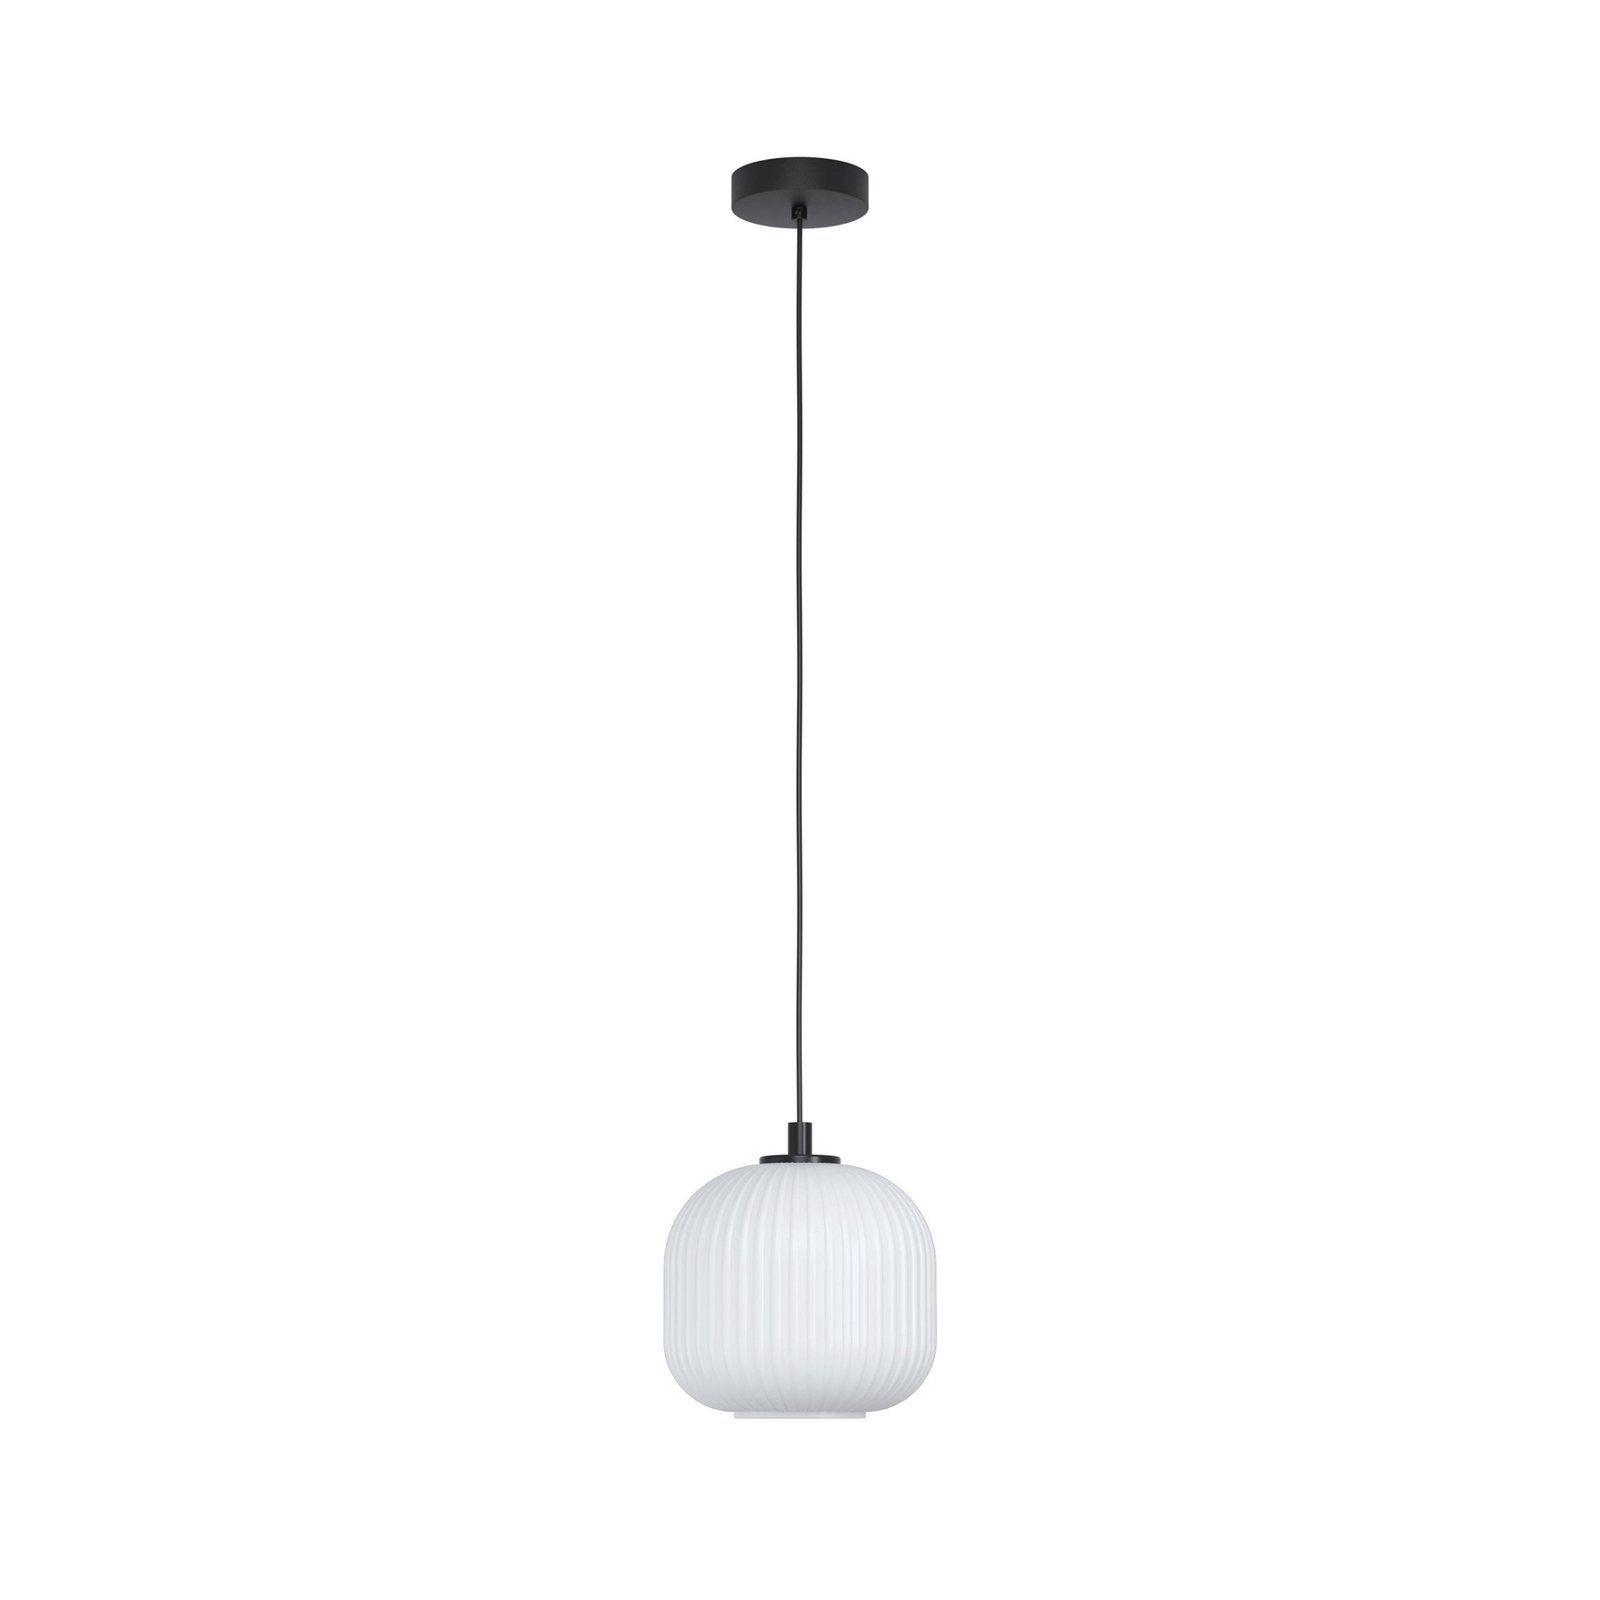 Hanglamp Mantunalle, Ø 20 cm, zwart/wit, glas